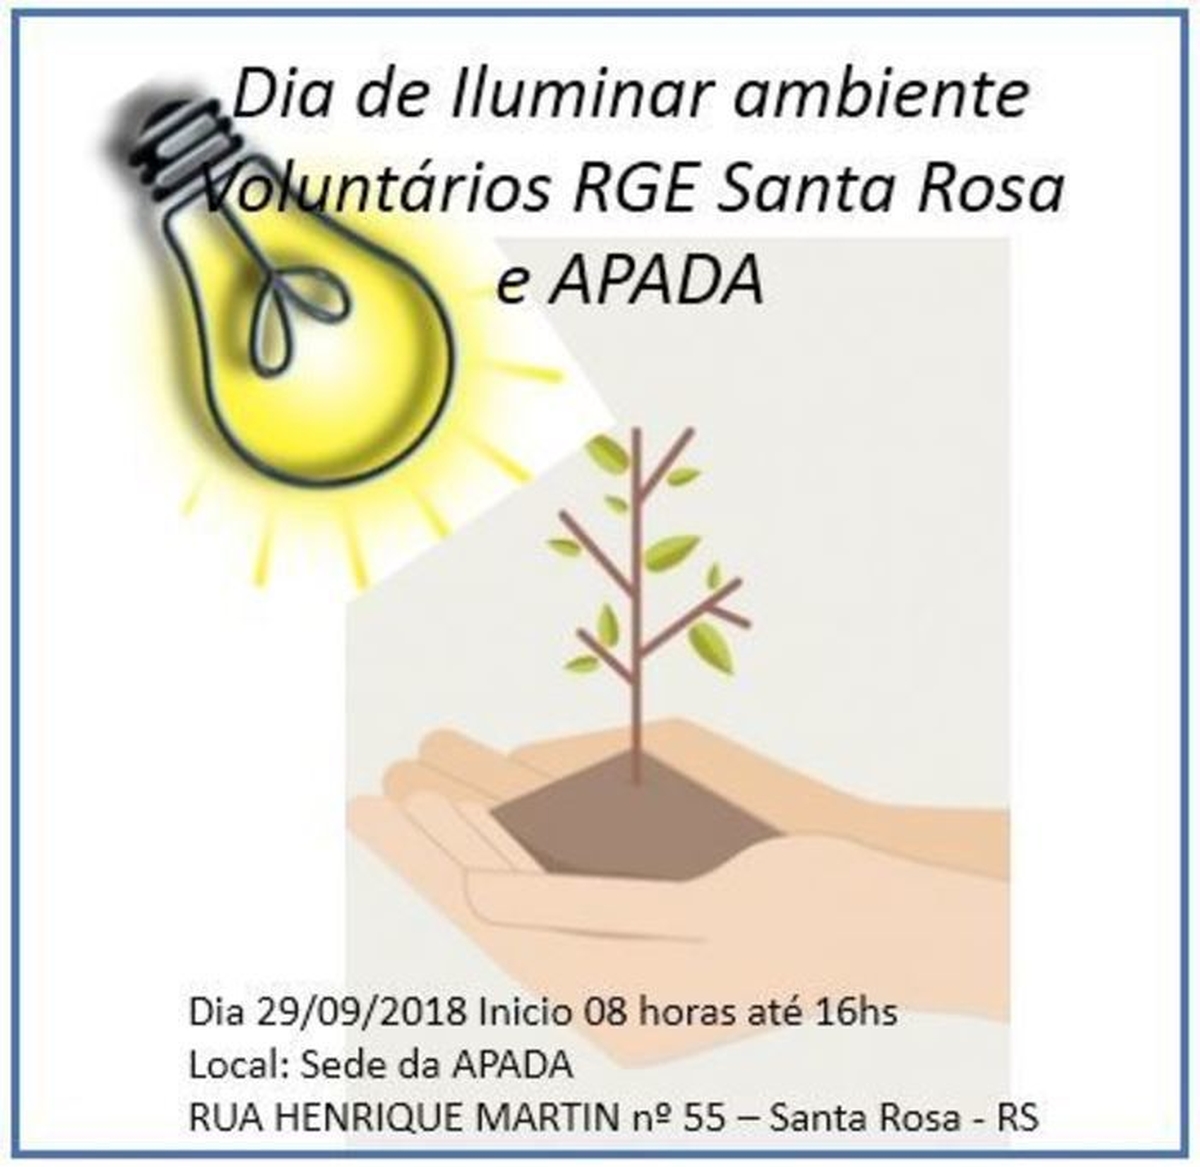 Dia Iluminar ambiente, Voluntários RGE Santa Rosa e APADA